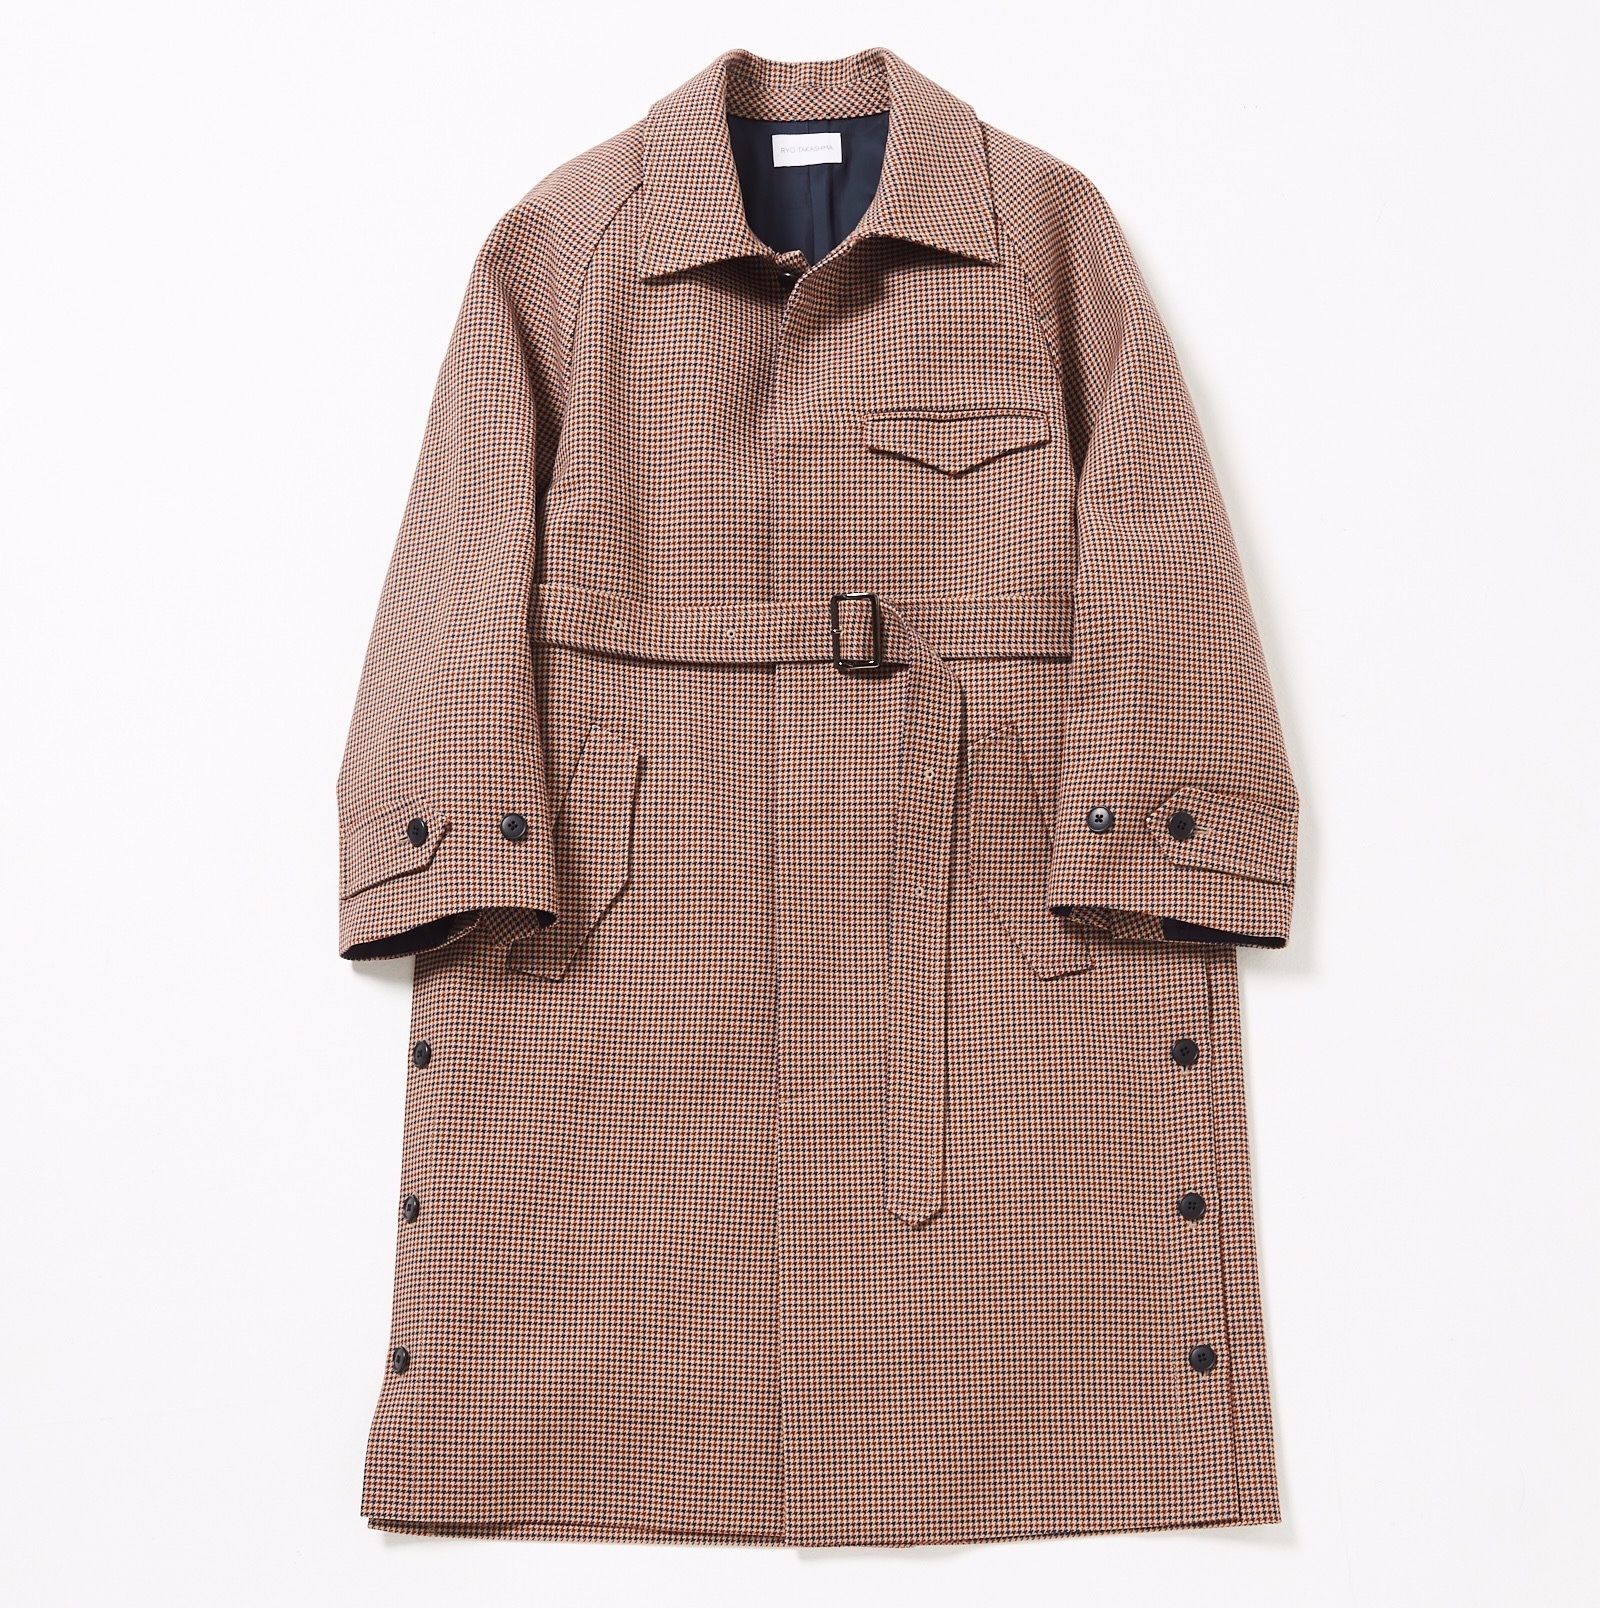 RYO TAKASHIMA（リョウタカシマ）の「Side slit balmacaan coat 